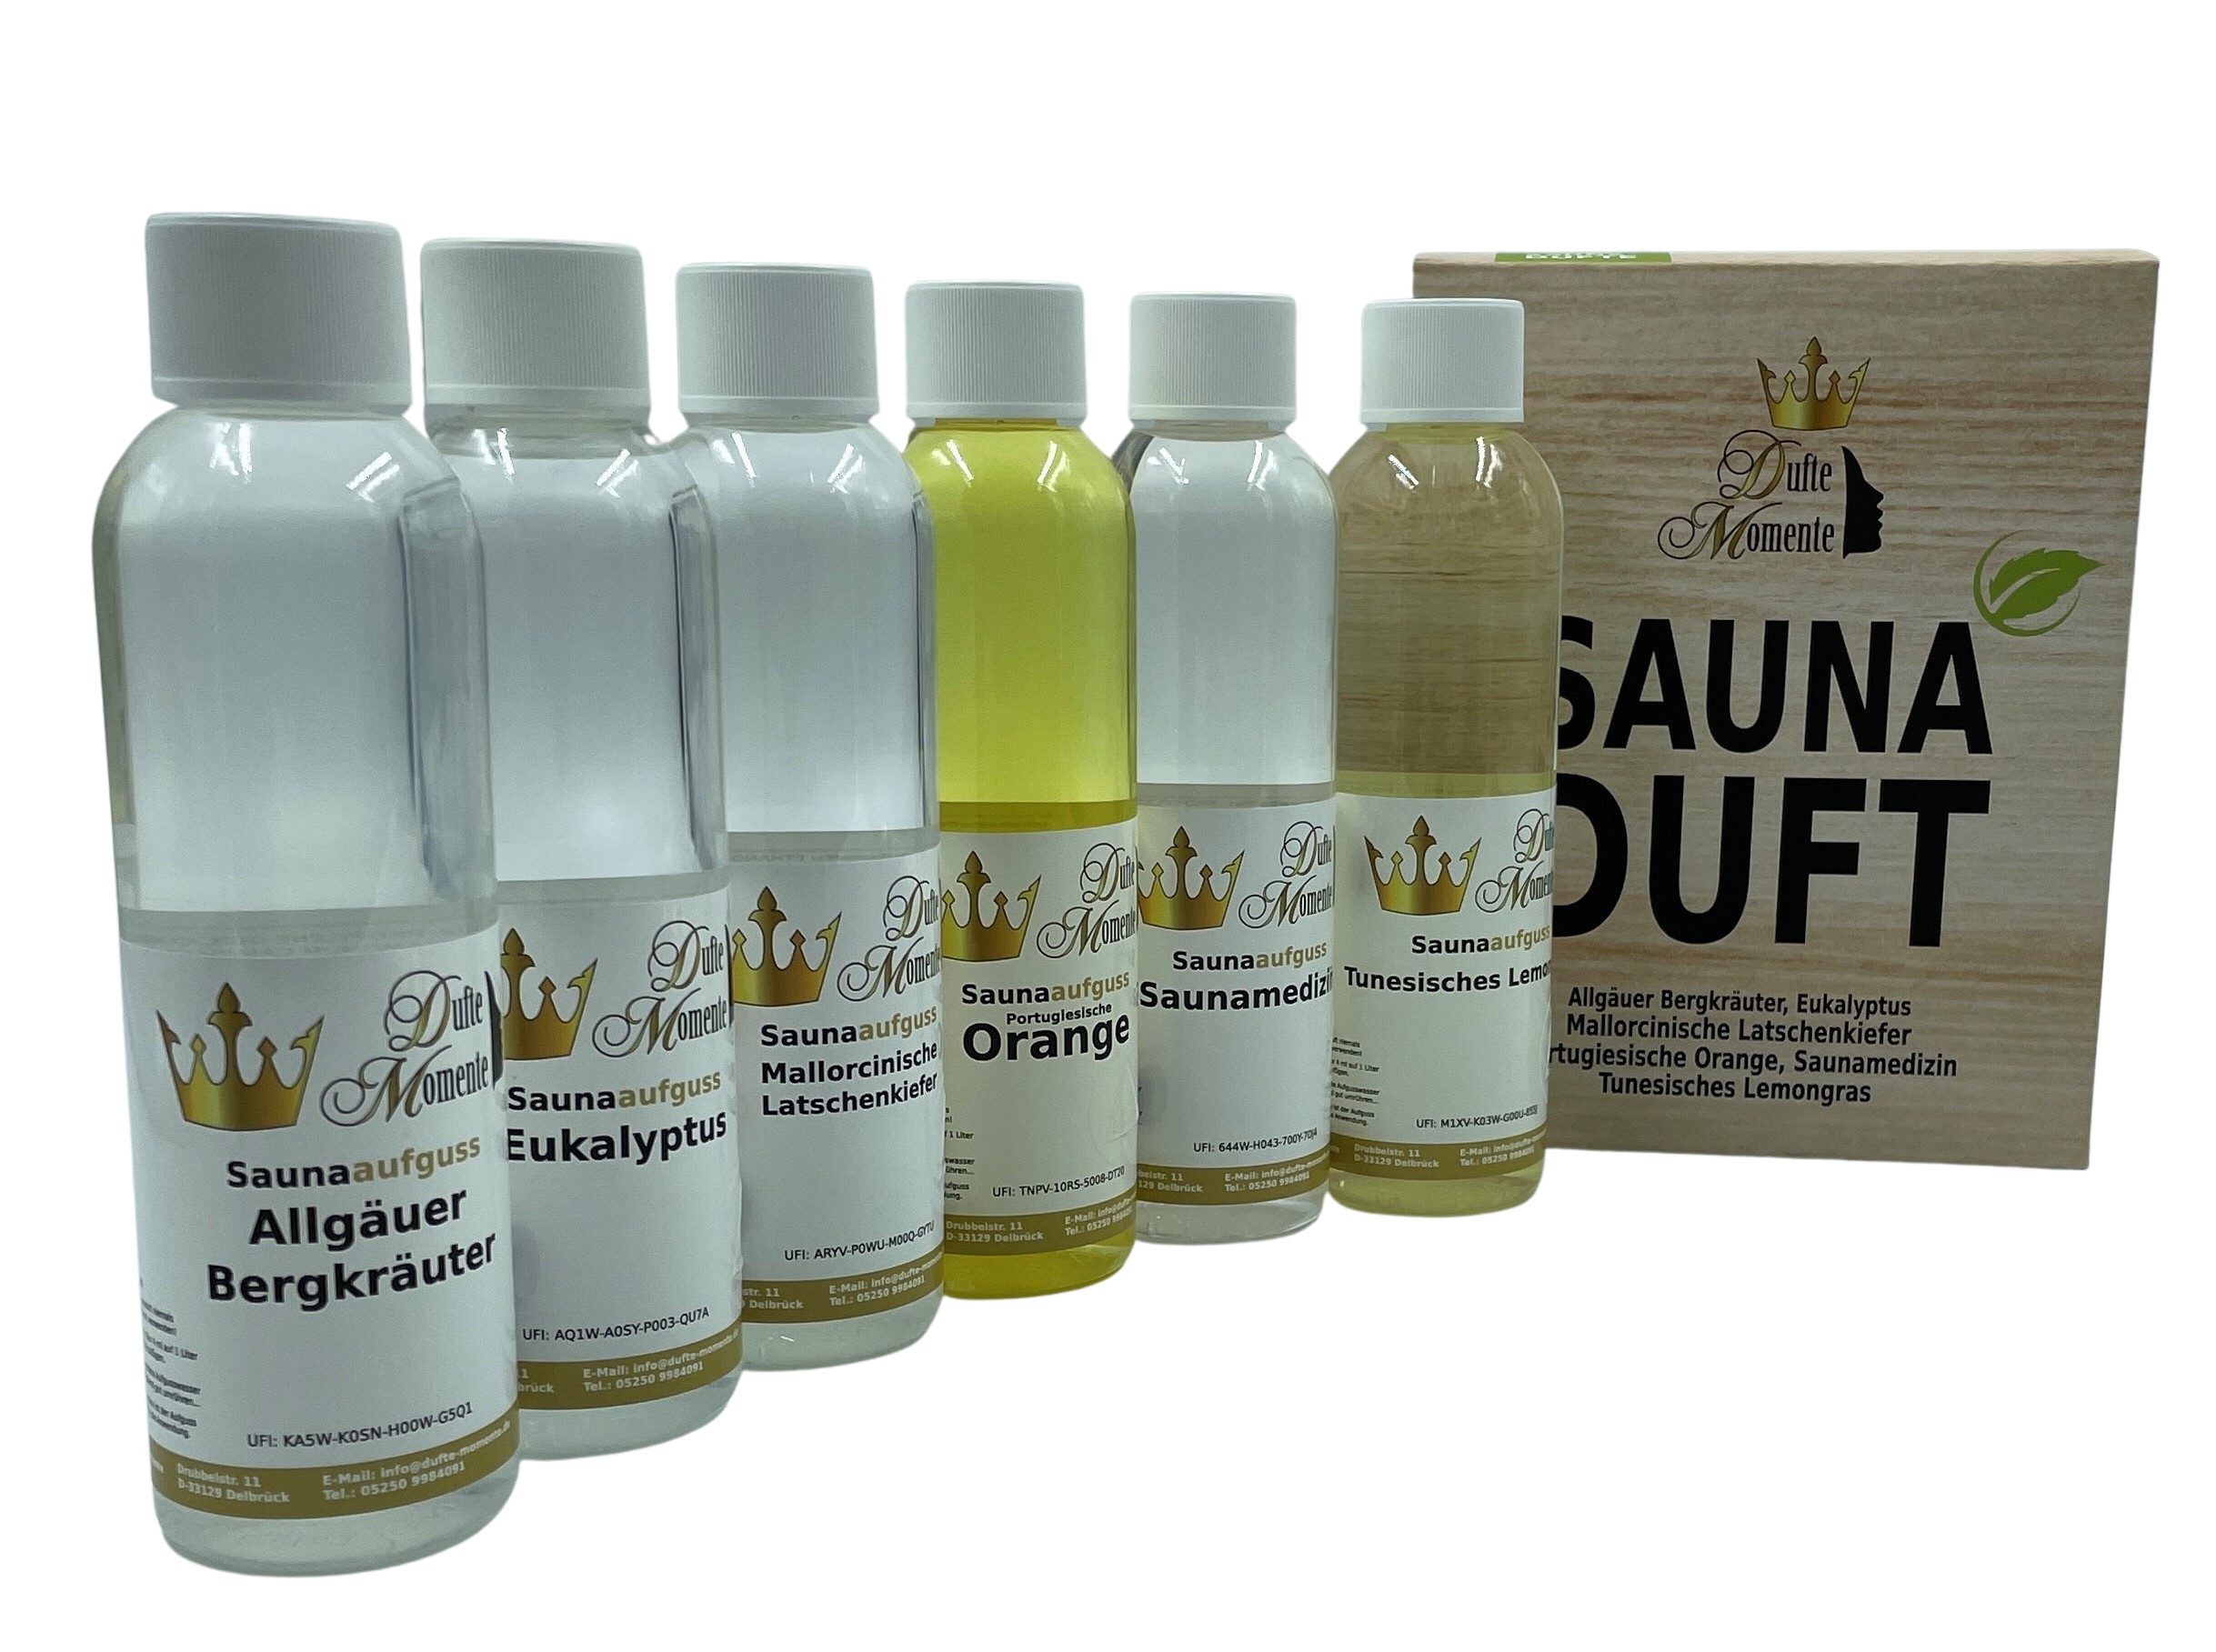 Dufte Momente Sauna-Aufgussset 6 x 250ml "Klassische Düfte" (6-tlg) 100%  naturreine und natürliche ätherische Öle